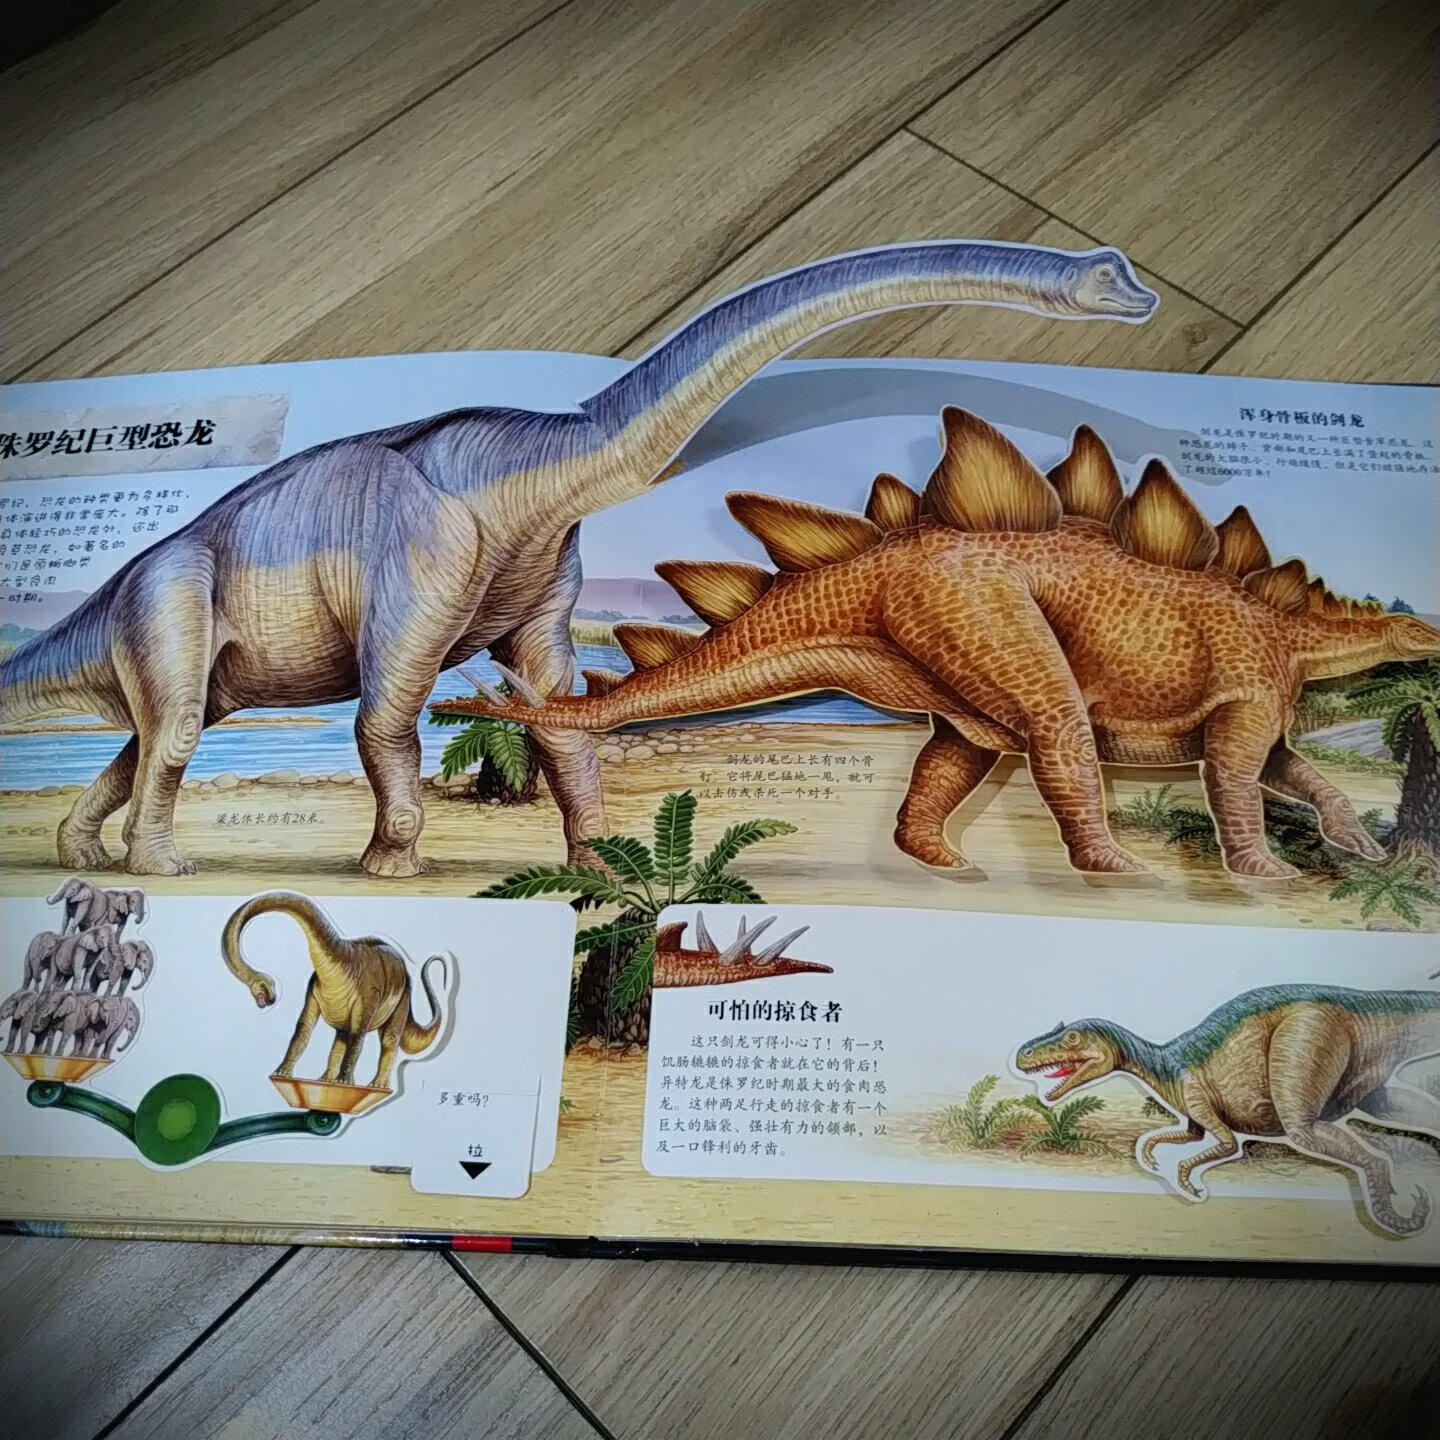 女儿是个小小恐龙迷，之前买的恐龙大陆系列已经翻烂了。这次做活动给她的书架更新一批书。